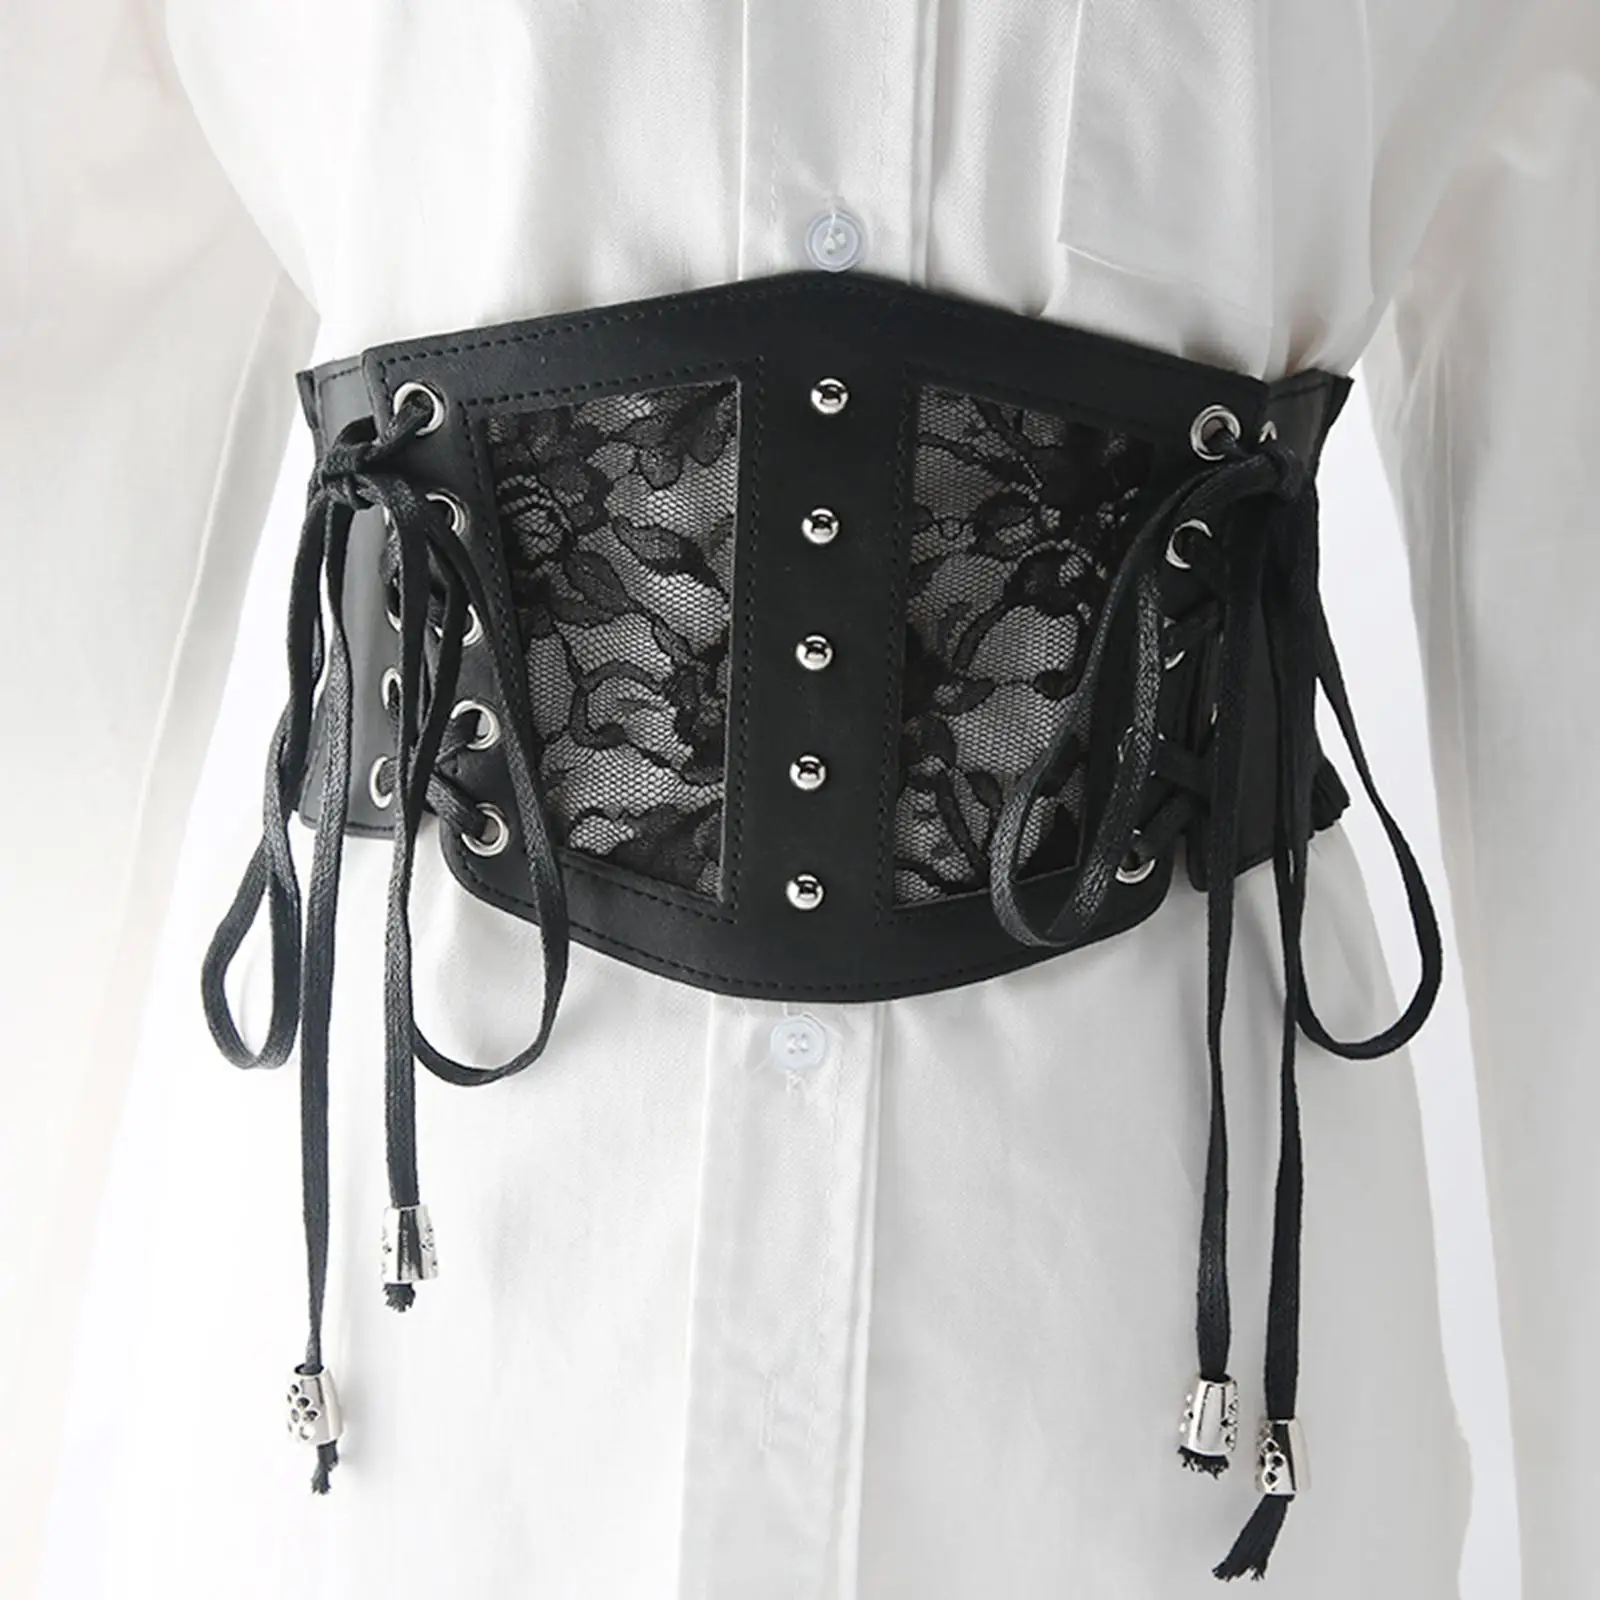 belts for dresses Women's Wide Waist Belt, Elastic Dress, Women's Stretch Corset, transparent belt